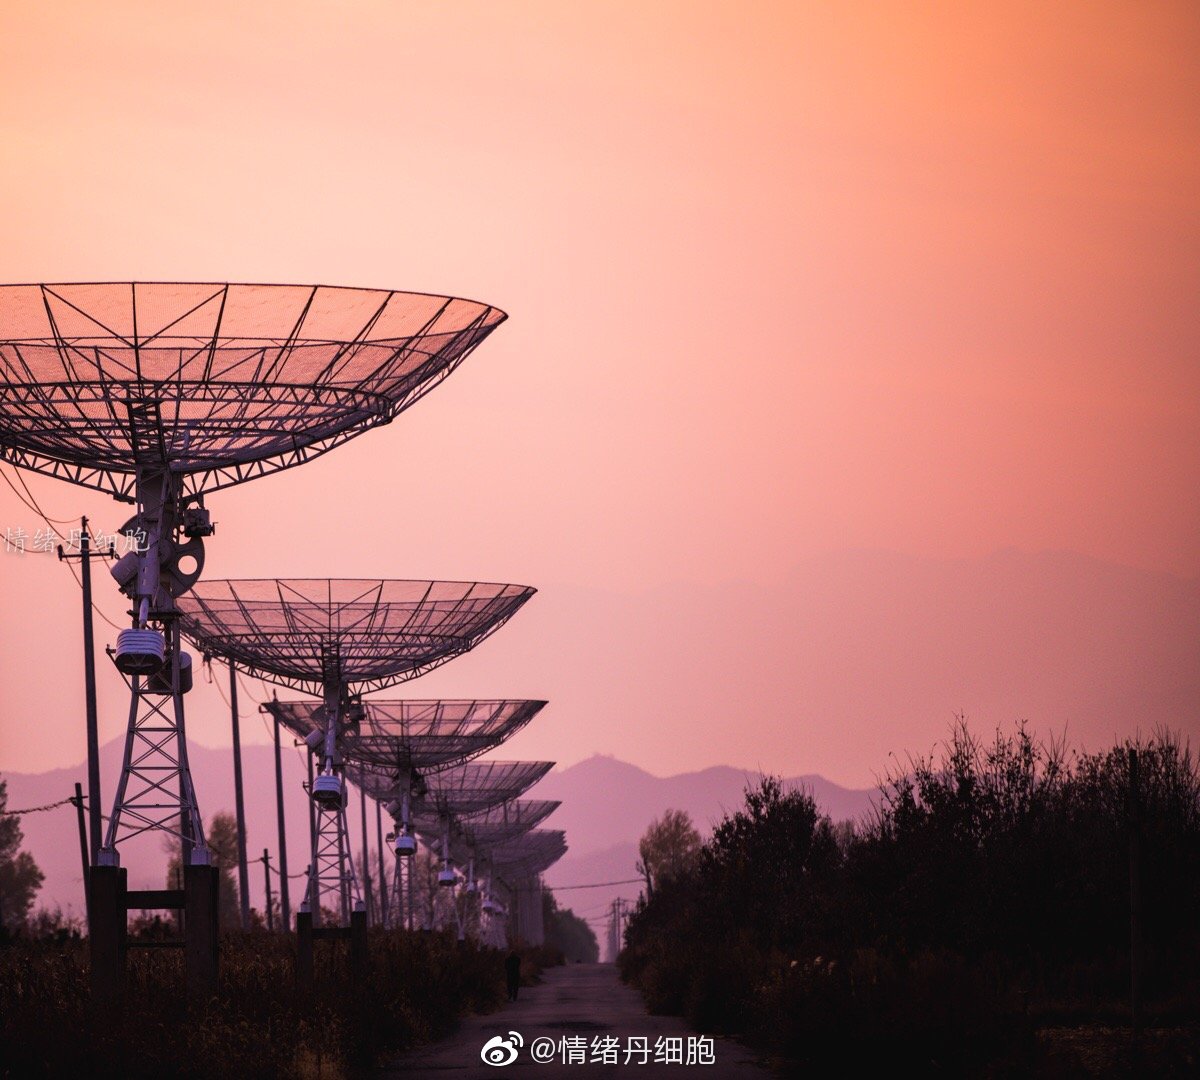 国家天文台密云射电天文观测基地是中国科学院国家天文观测中心的重要